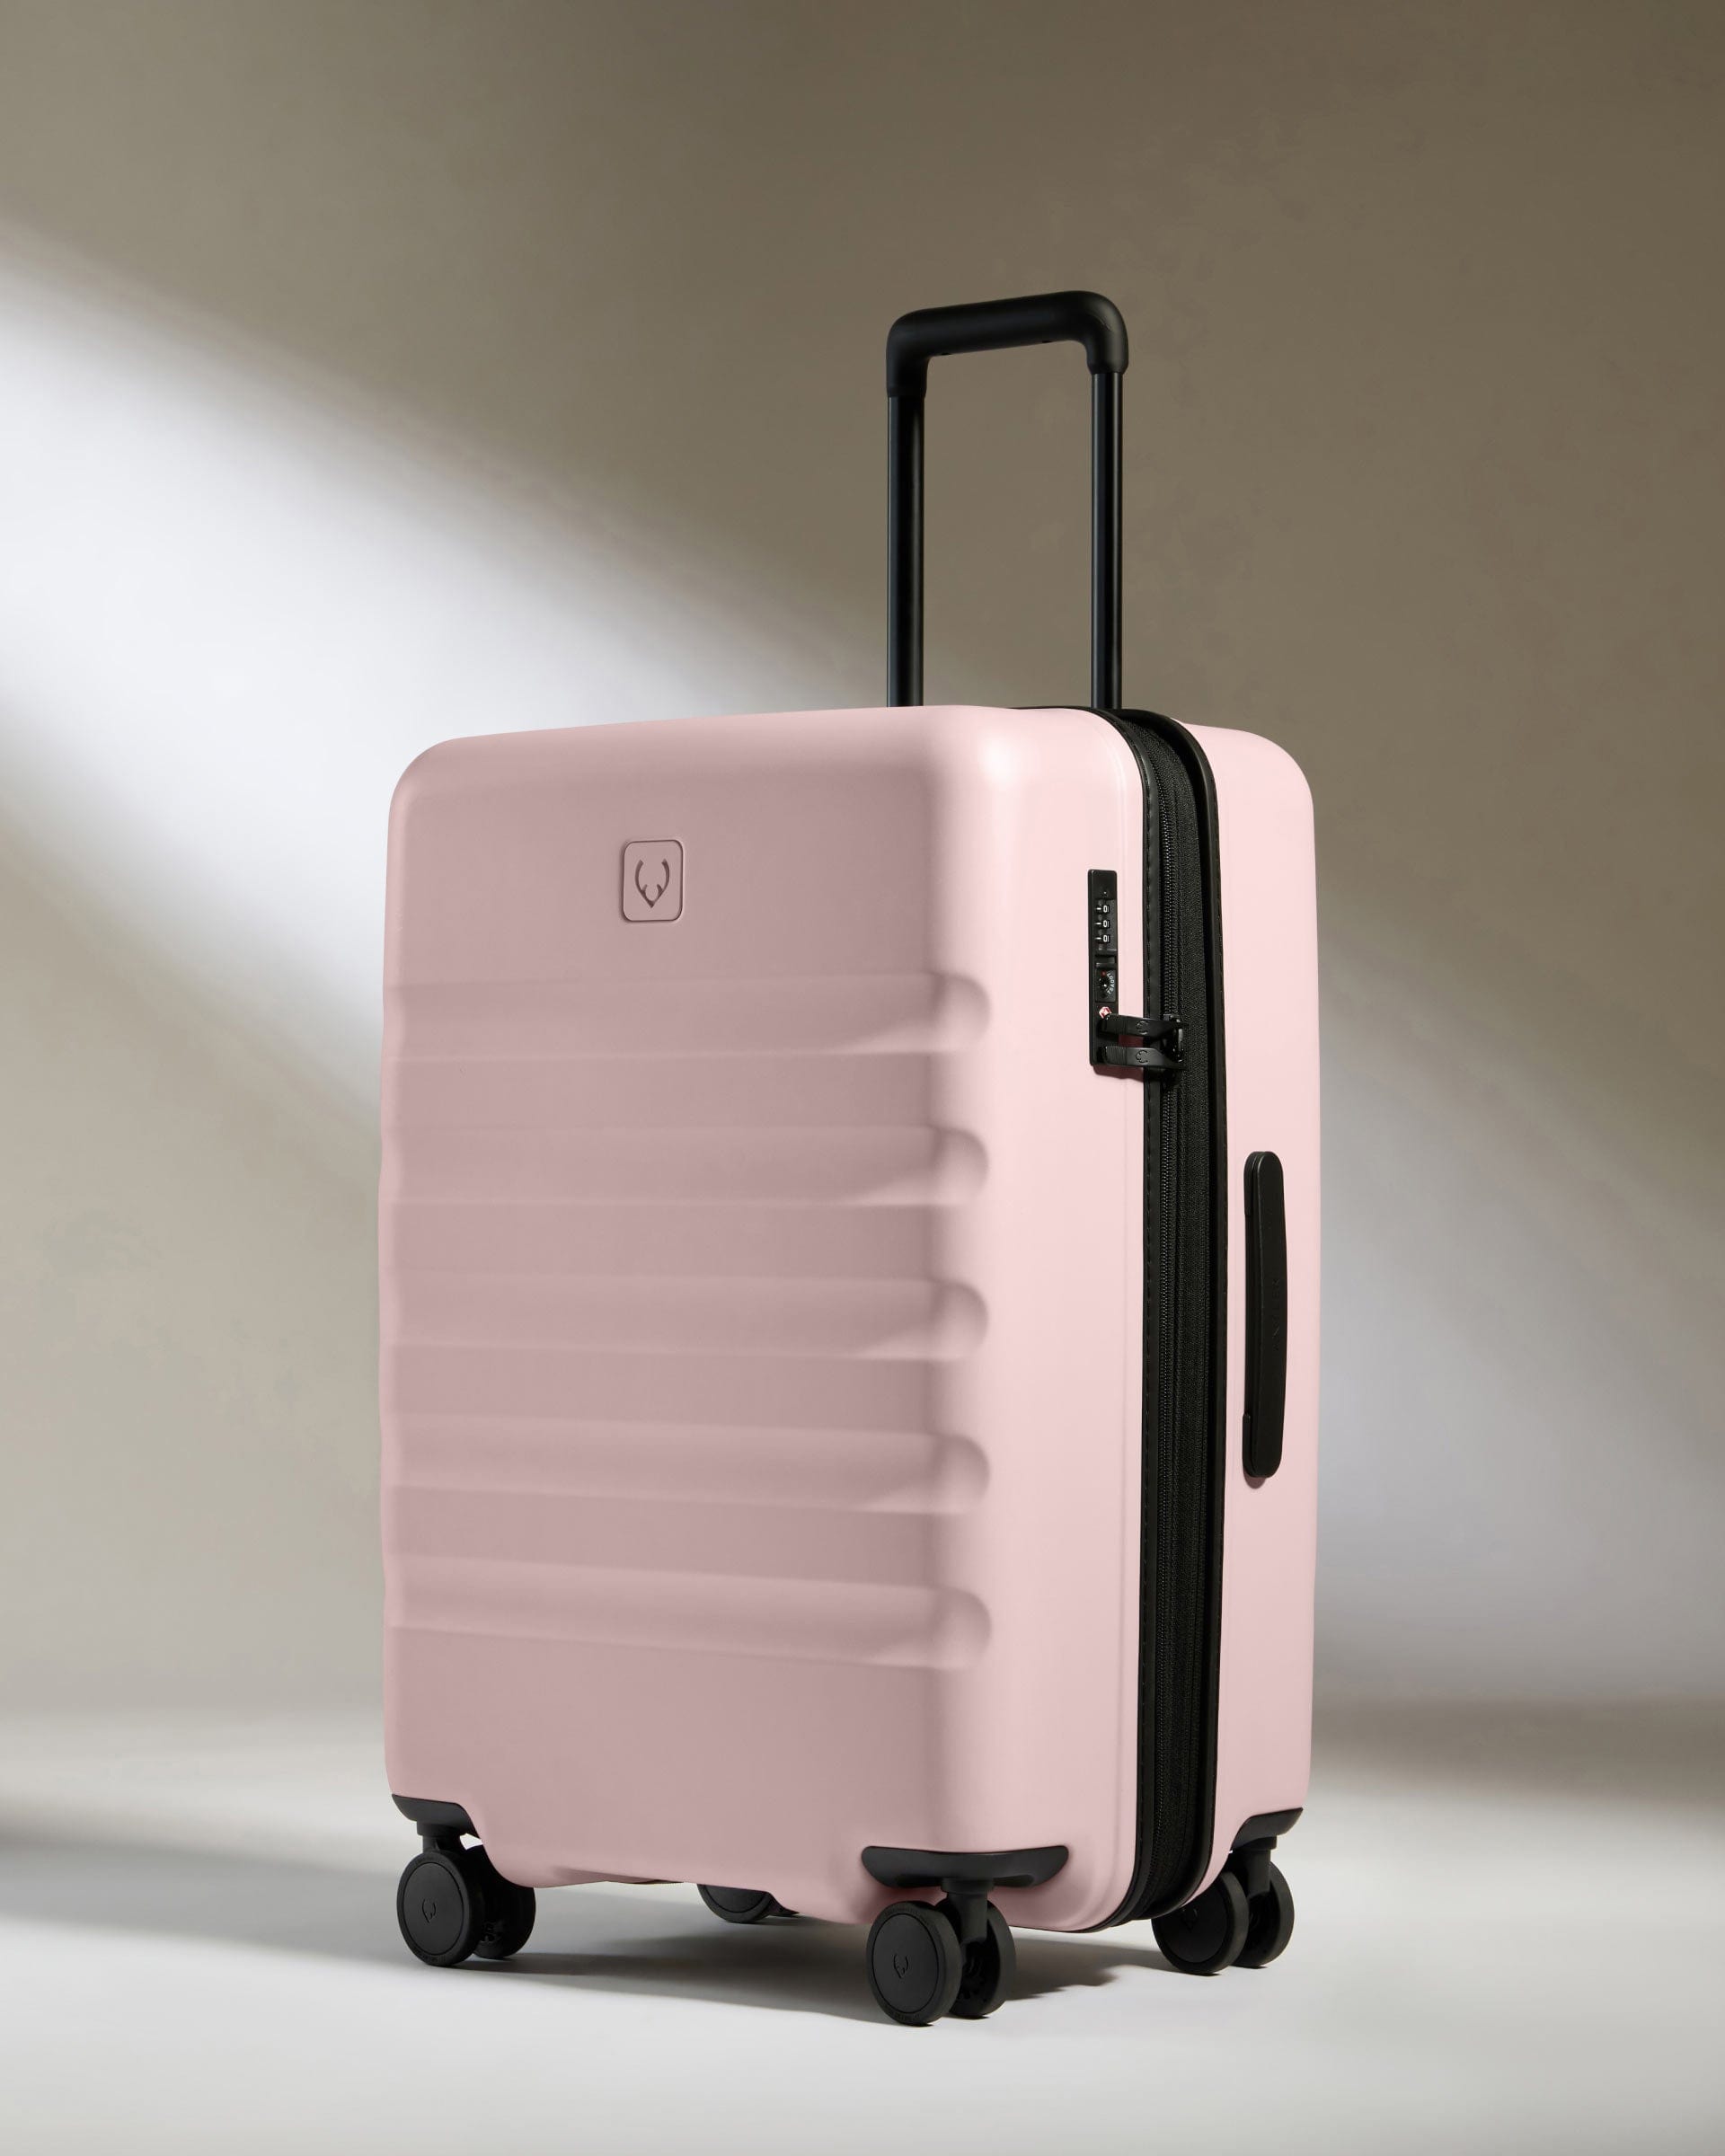 View Antler Icon Stripe Medium Suitcase In Moorland Pink Size 455cm x 66cm x 30cm information